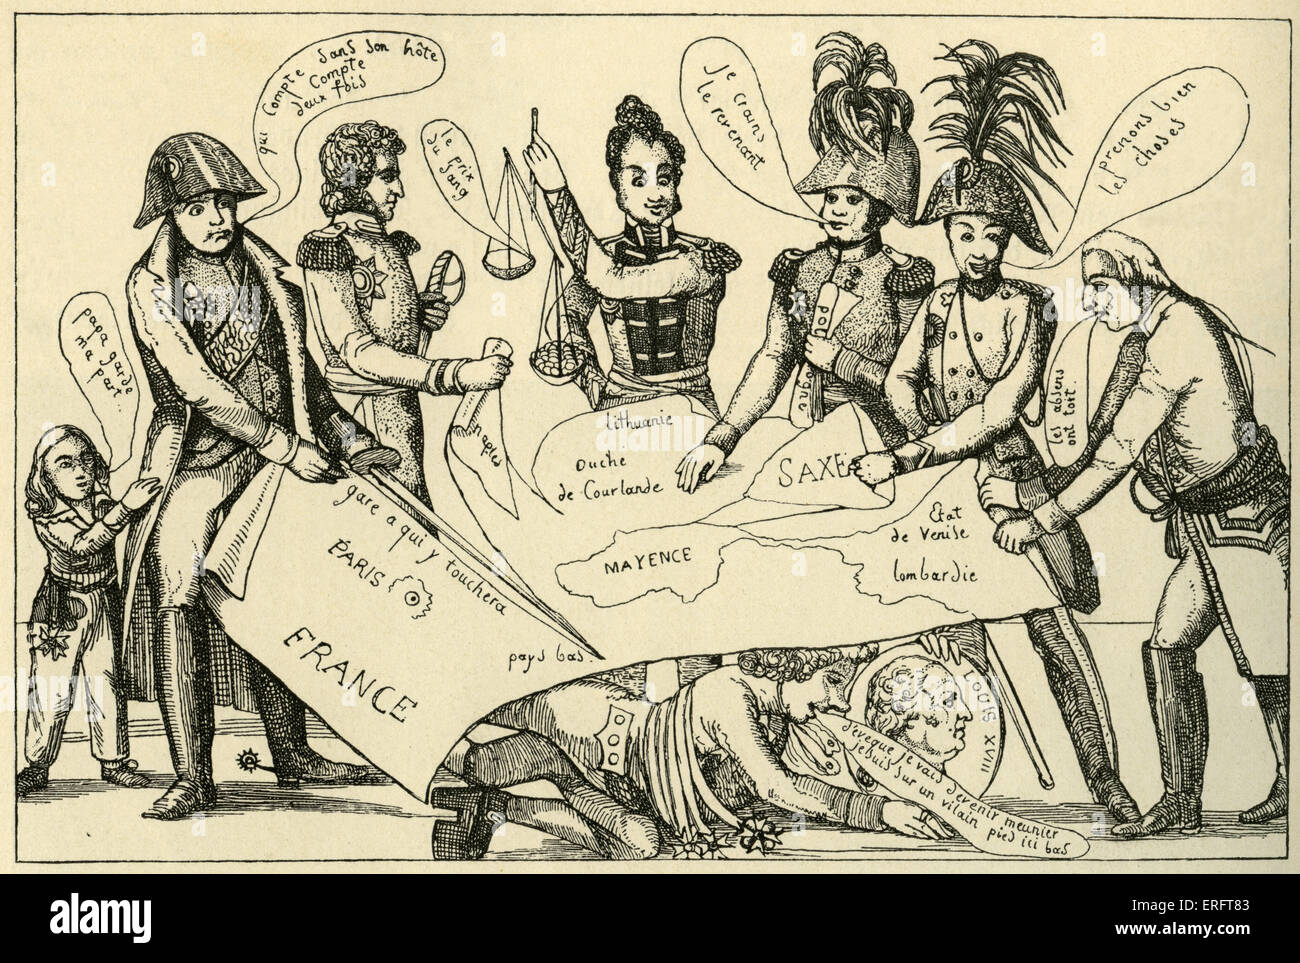 Kongreß von Wien - französische Karikatur von einem Anfang des 19. Jahrhunderts-Flyer. Künstler unbekannt. Der Wiener Kongress (1814-1815) zielte darauf ab, die politische Landkarte Europas nach der Niederlage des napoleonischen Frankreich neu gezeichnet. Stockfoto